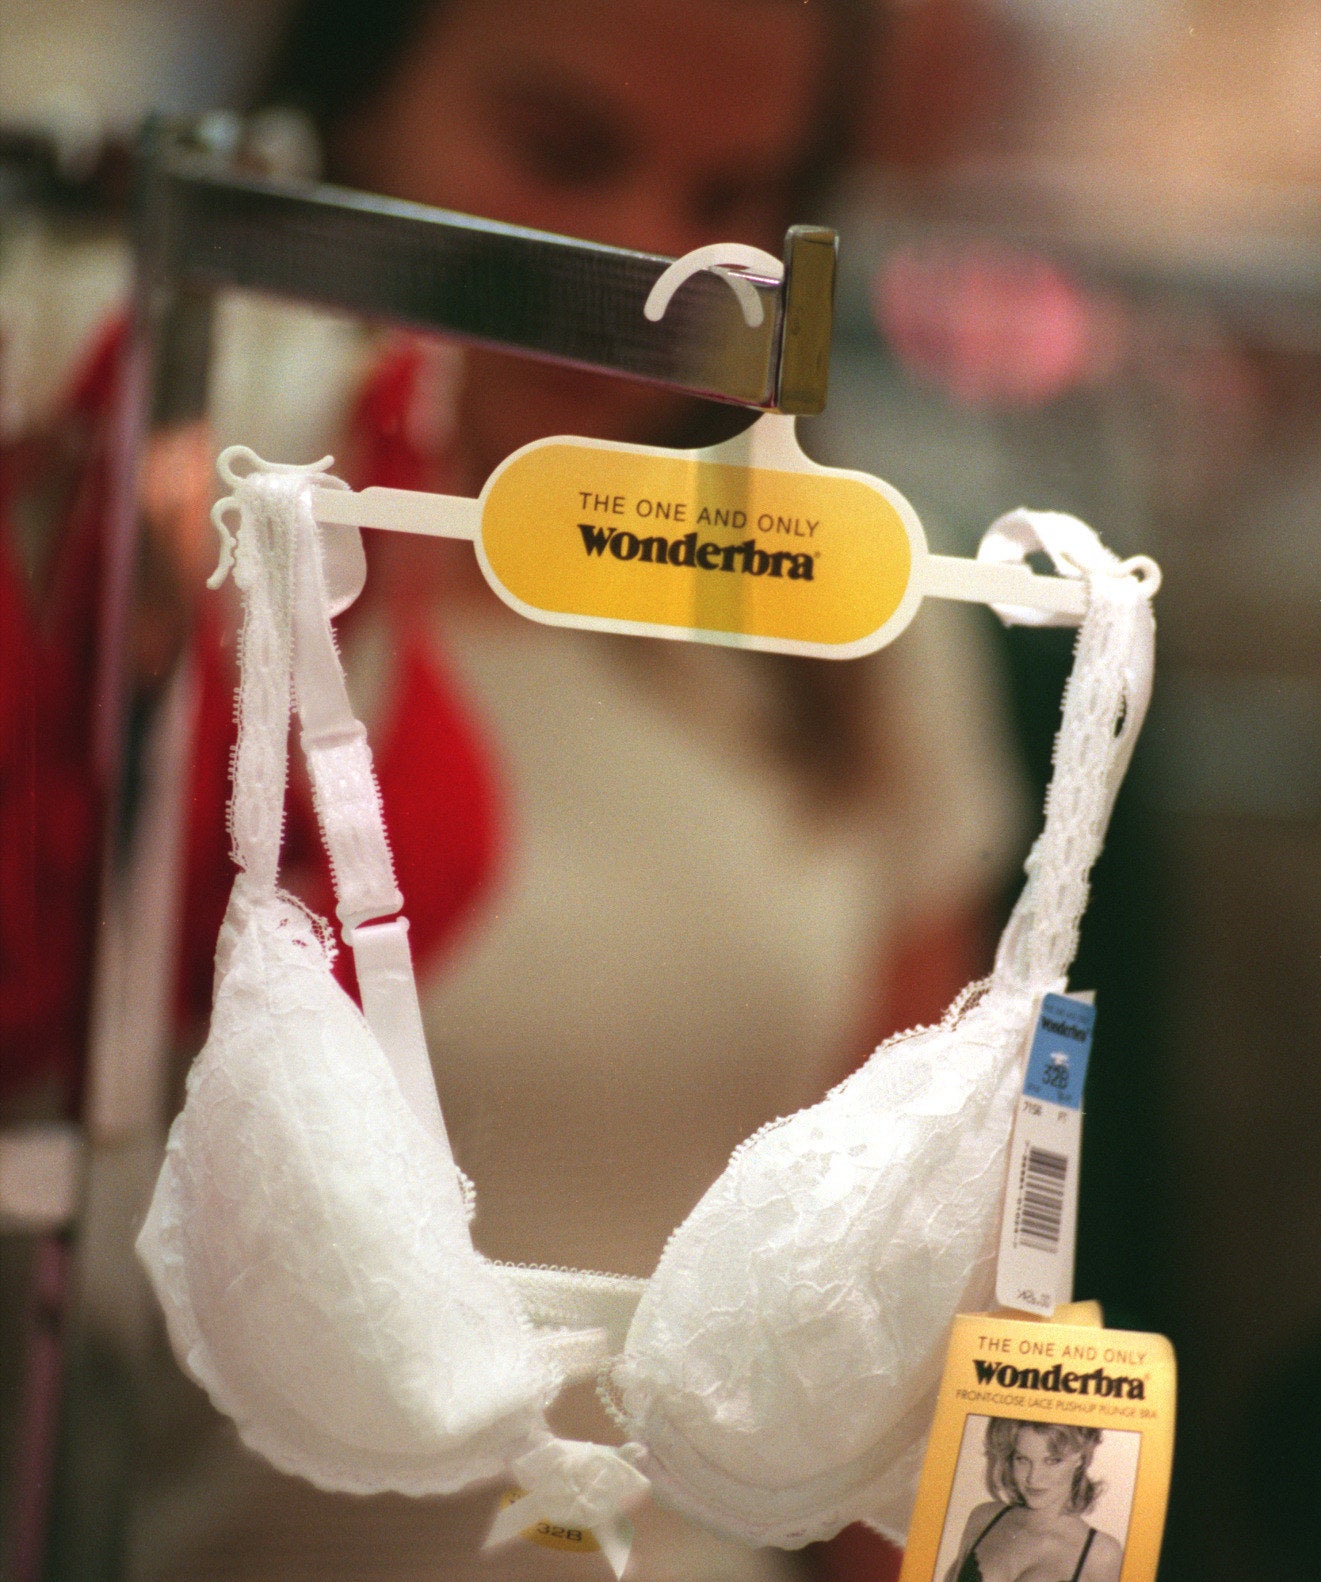 One WonderBra hanging on a rack